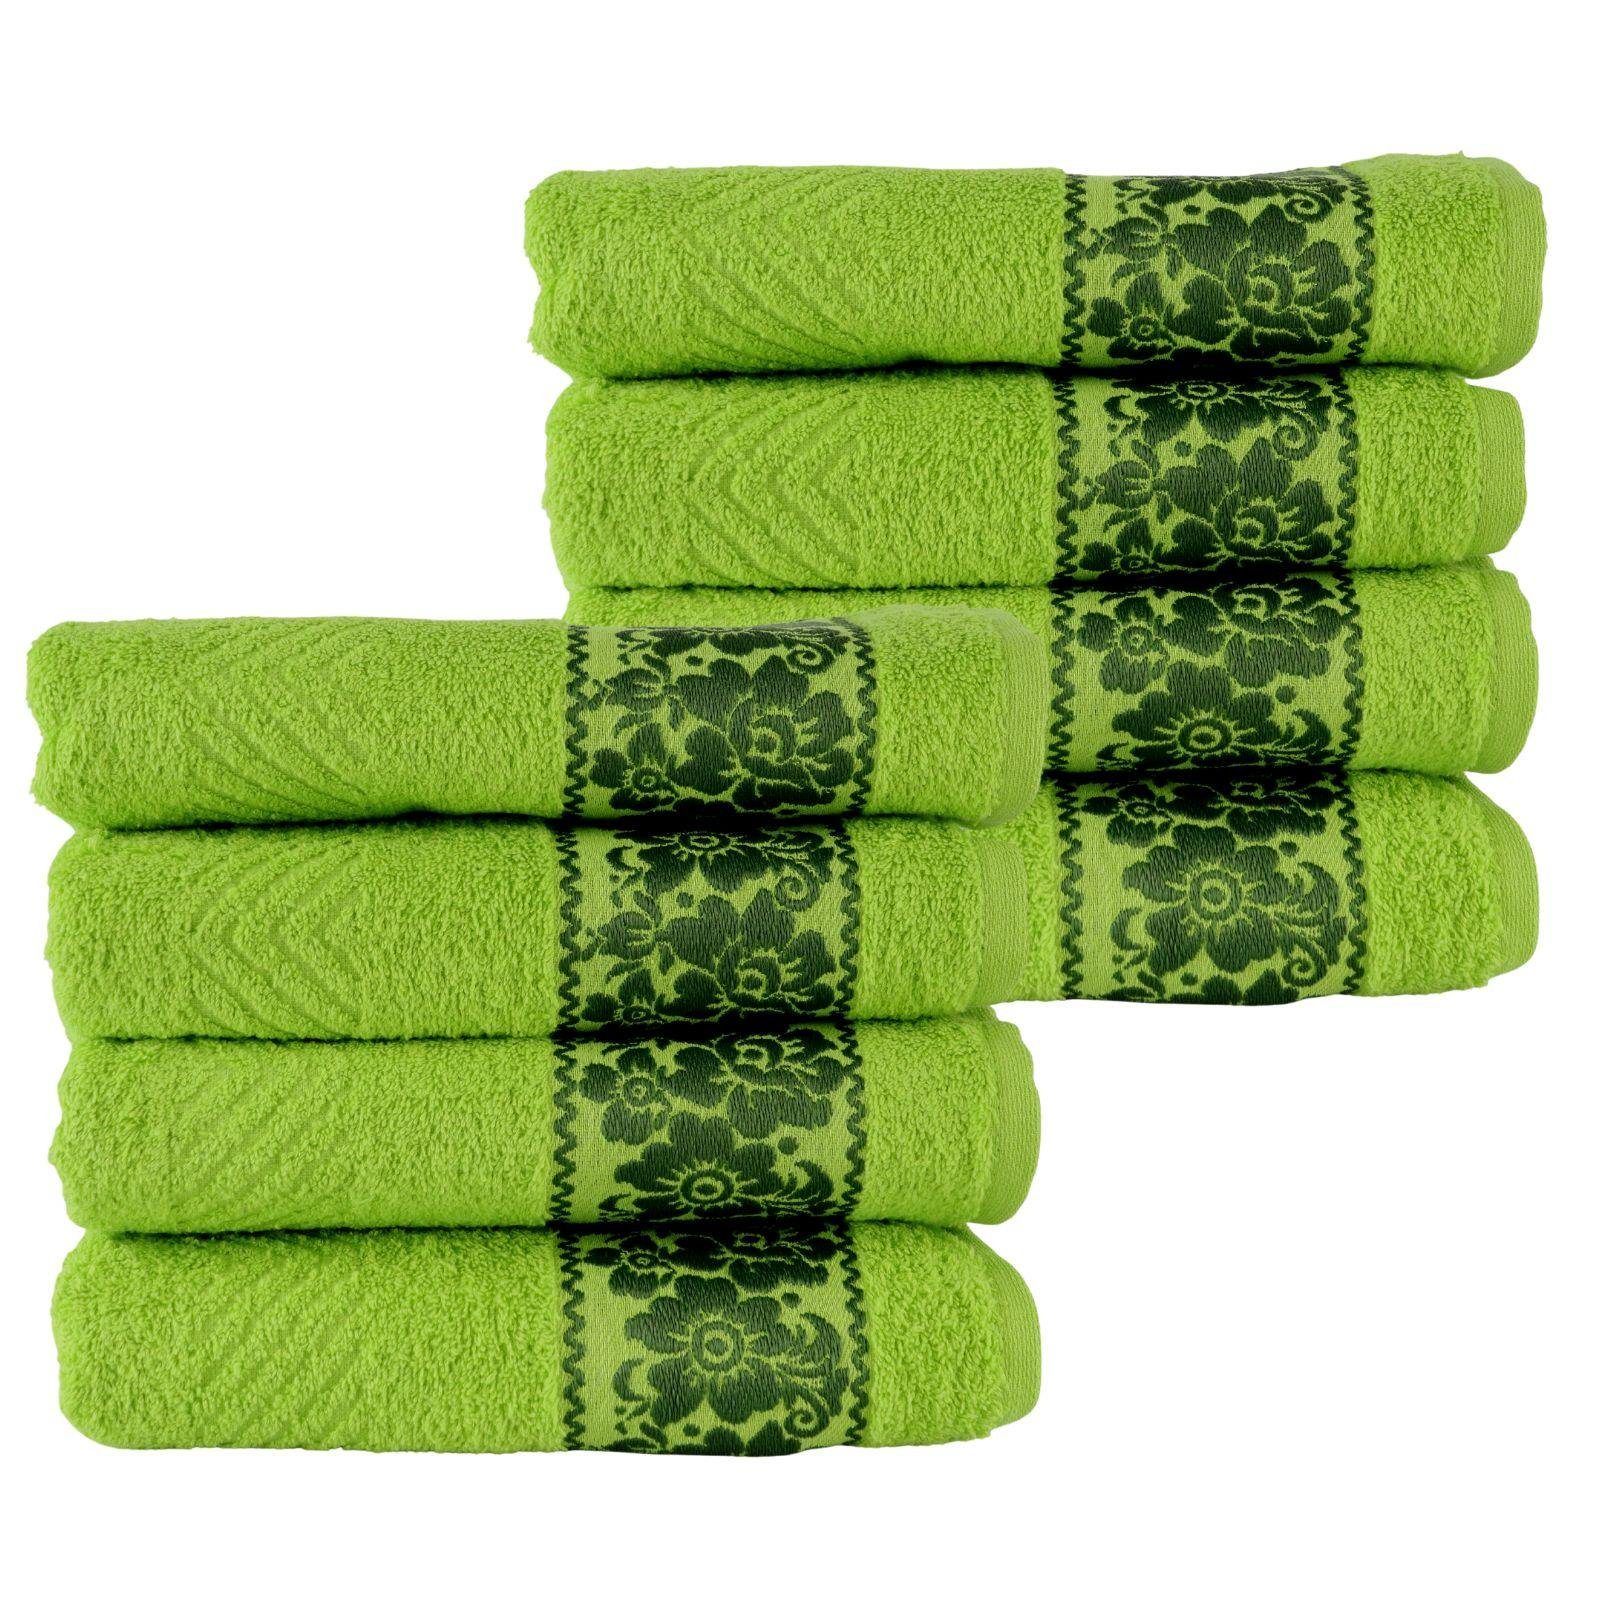 Plentyfy Handtücher Handtuch Set 8teilig aus 100% Baumwolle, 100% Baumwolle (8-St), Duschhandtuch - Frottee Handtuch Set - Badetuch | Alle Handtücher